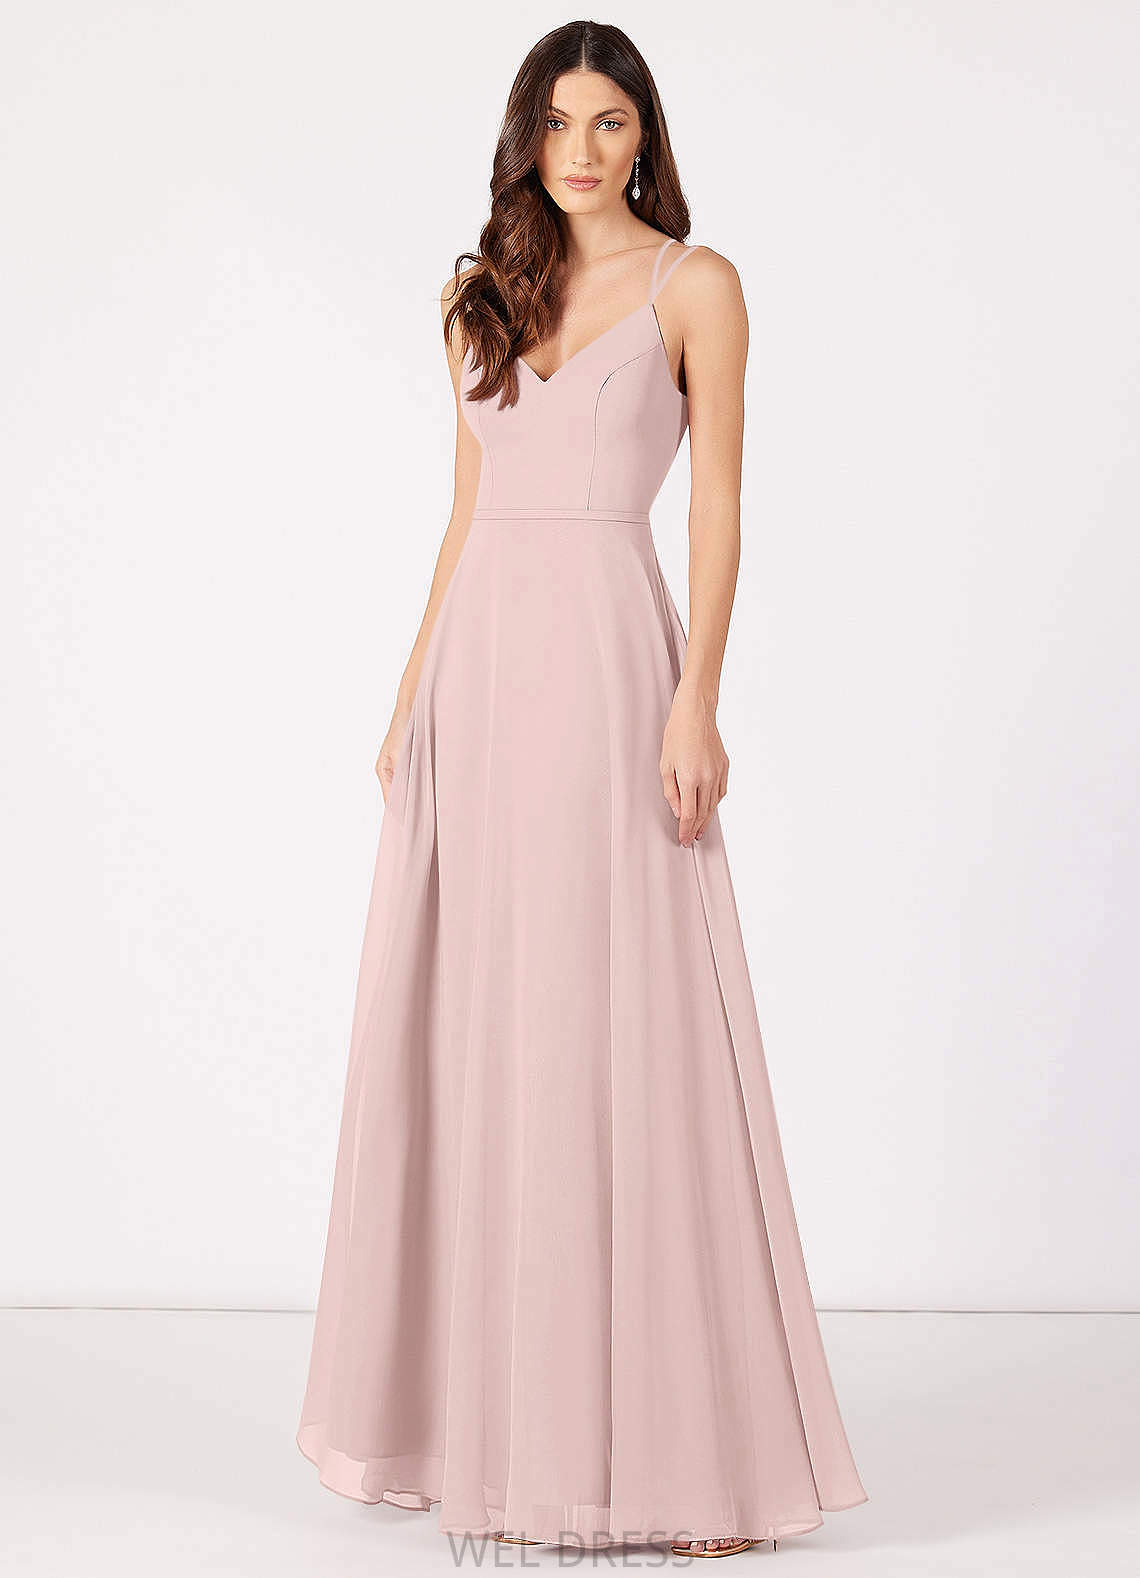 Daphne Sleeveless A-Line/Princess V-Neck Natural Waist Floor Length Bridesmaid Dresses